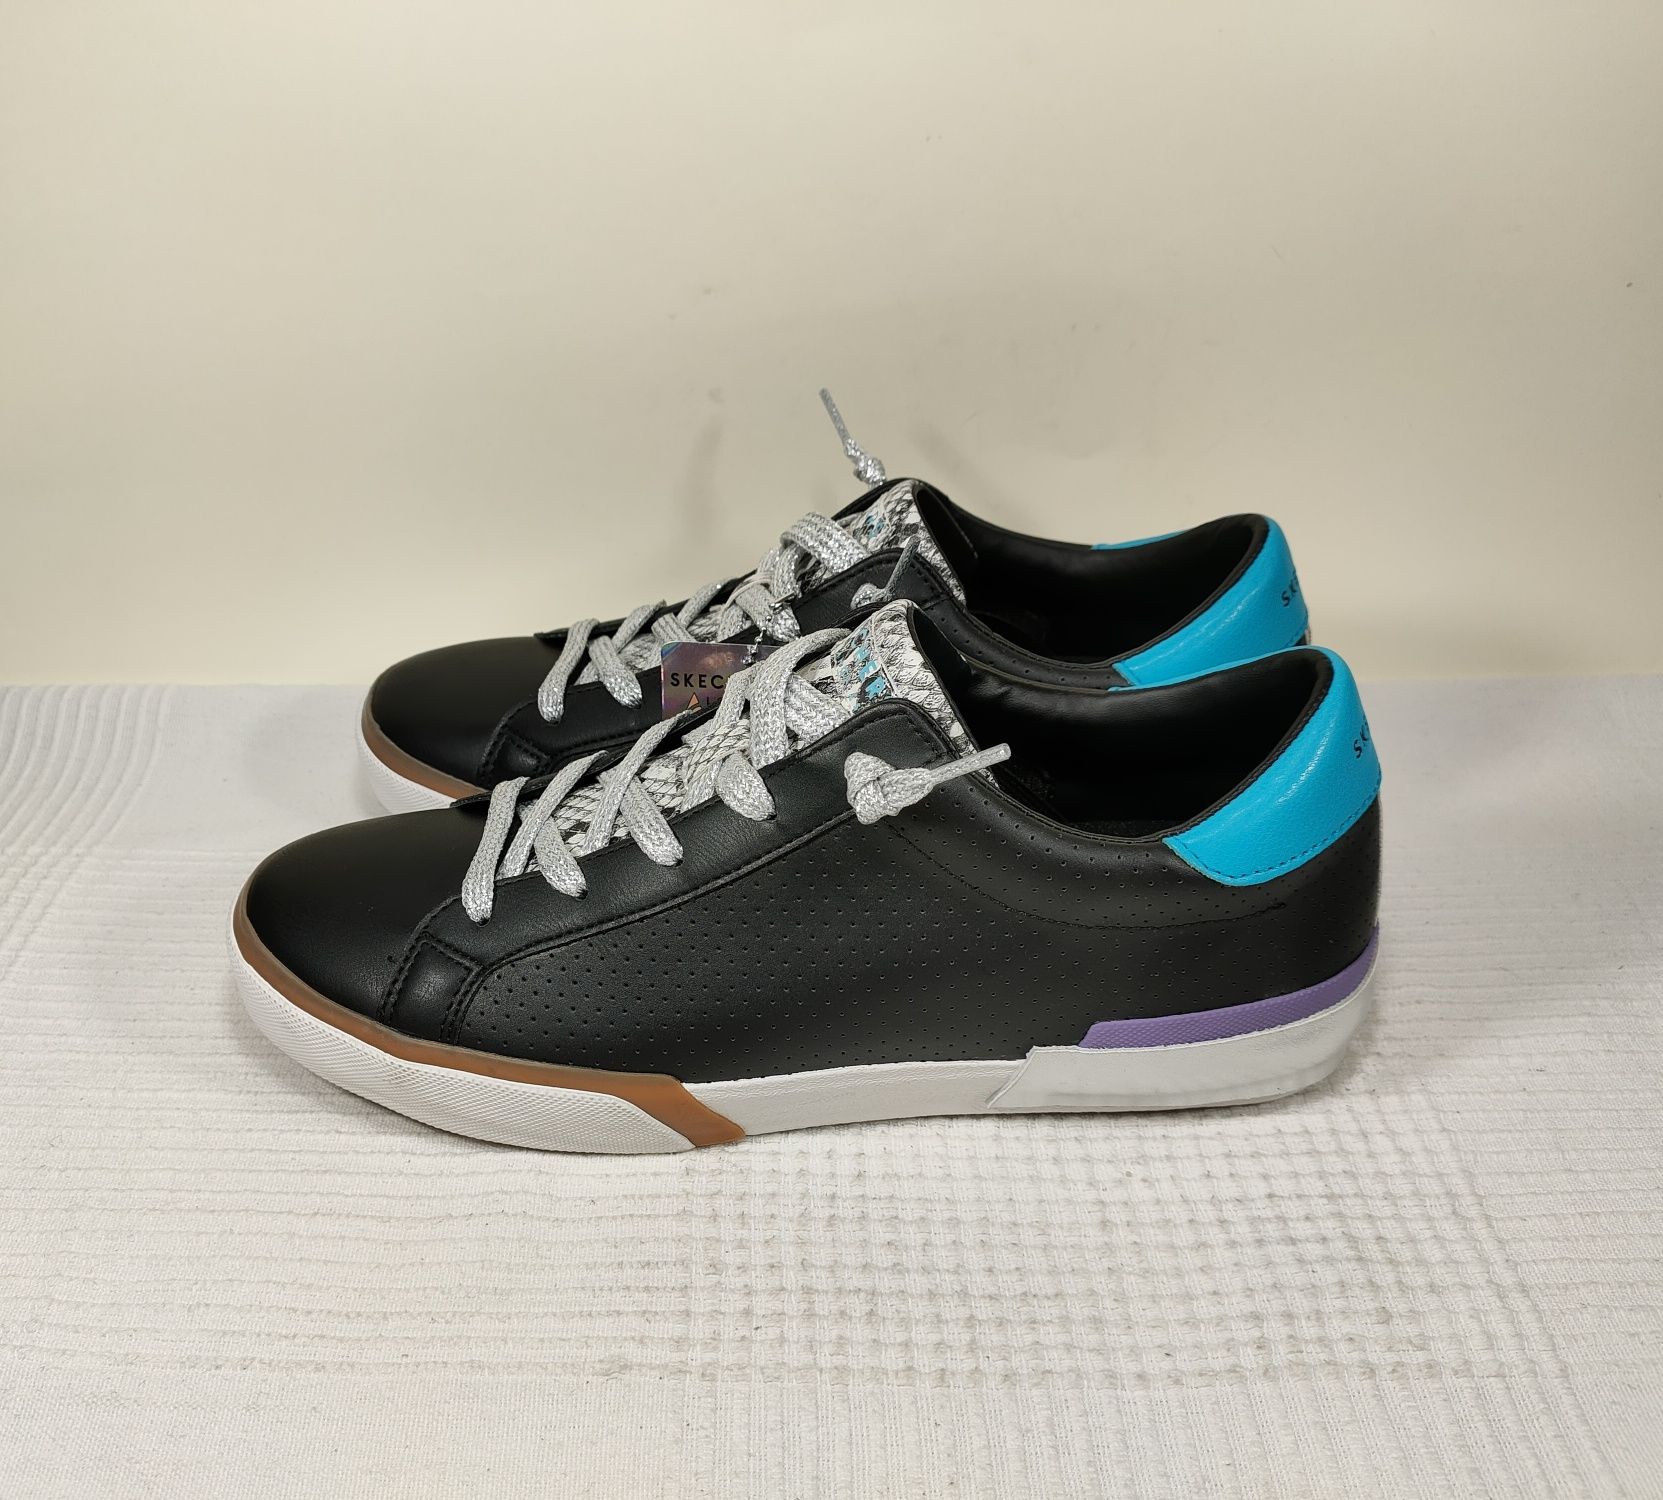 Buty Skechers Los Angeles damsk sneakersy Wedge Fit Street 39,5 26,5cm